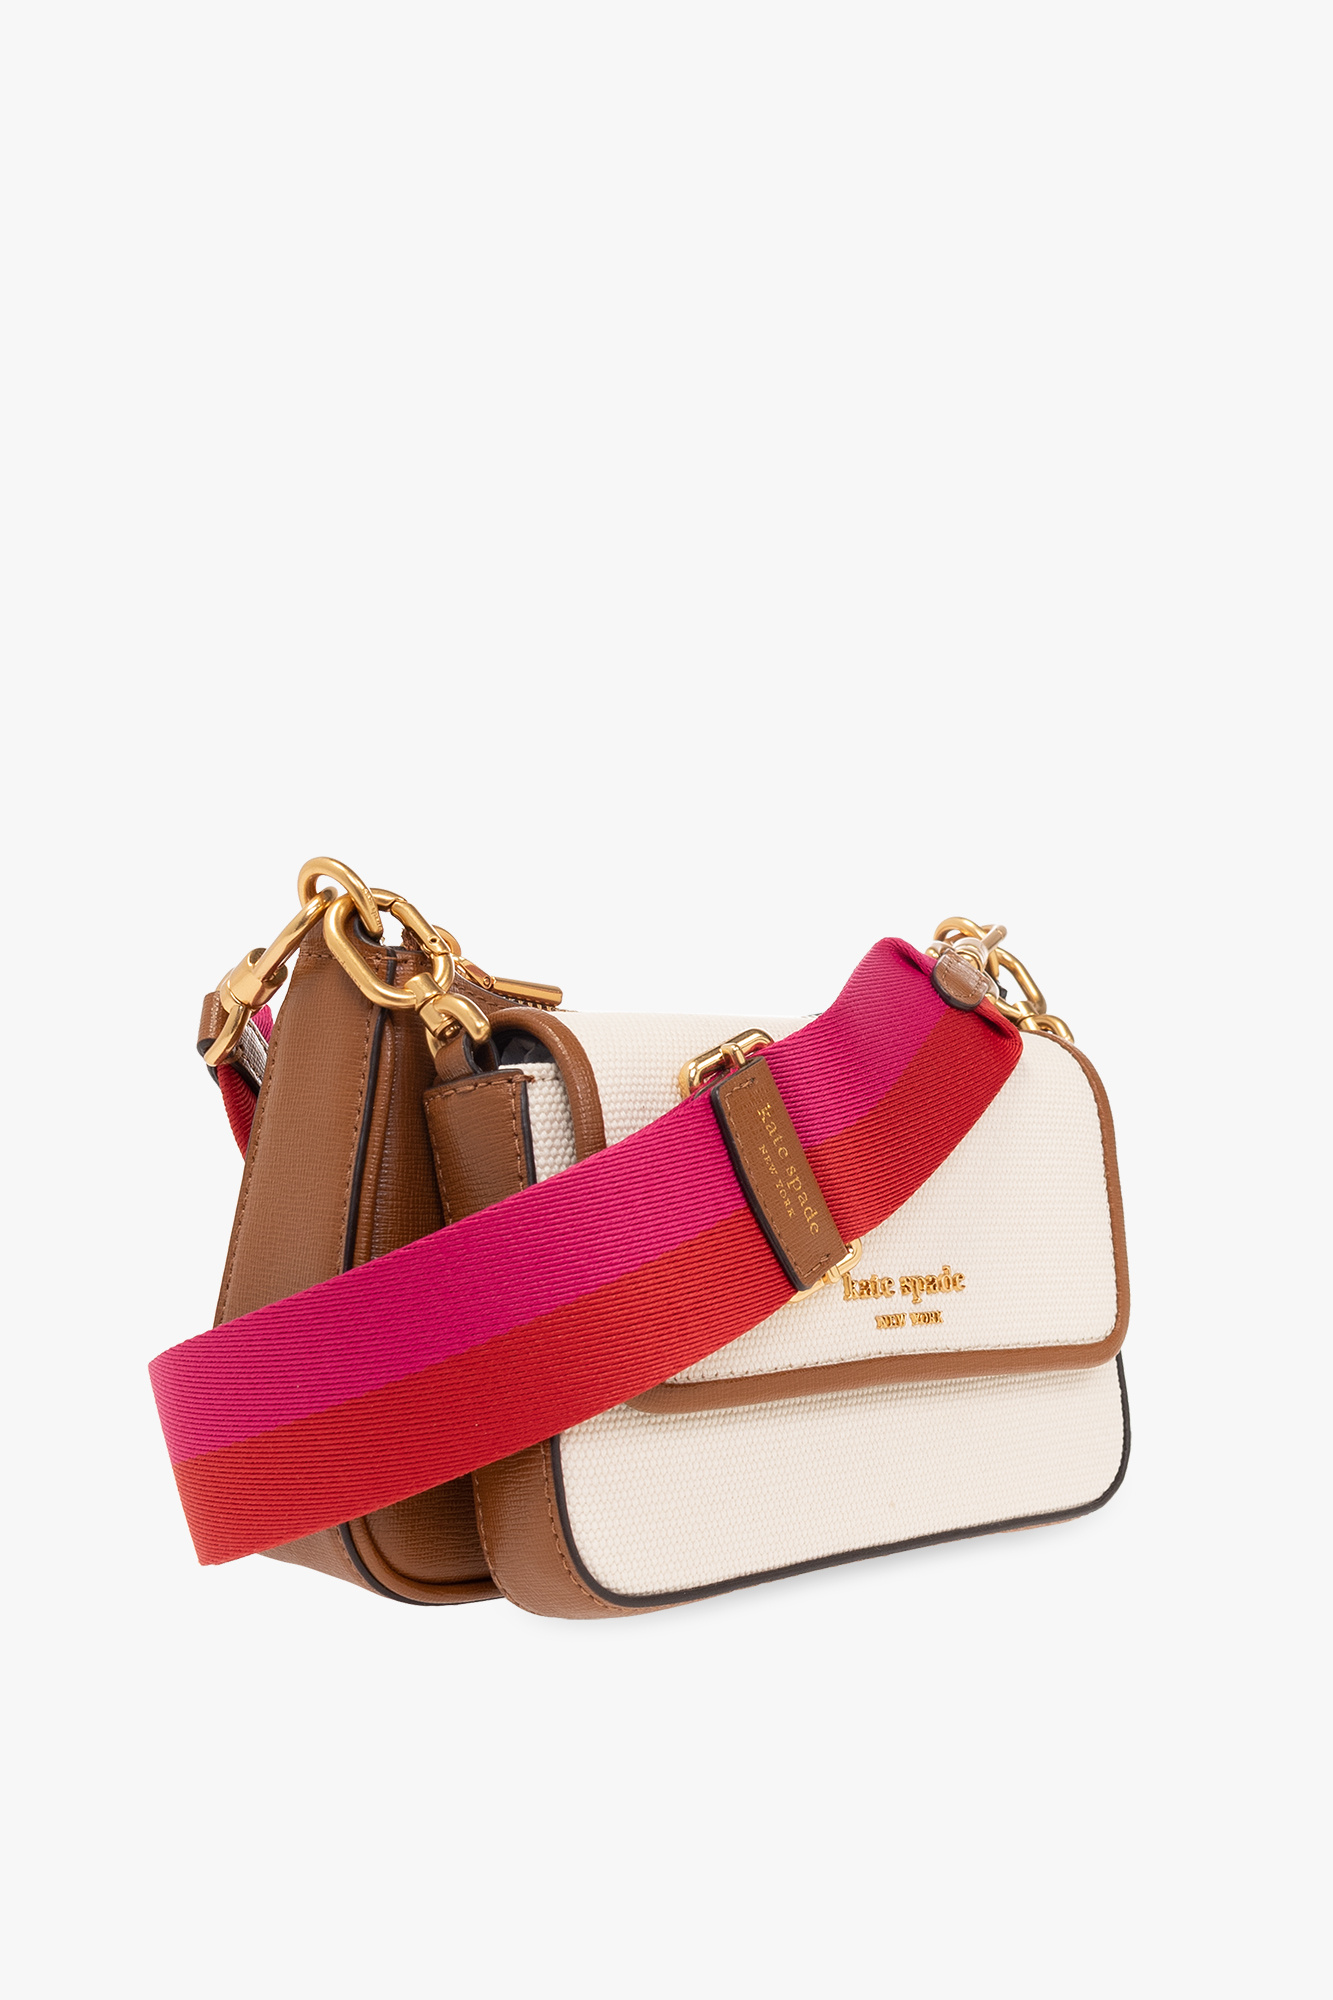 Buy the Kate Spade Leather Shoulder Handbag Set Multicolor